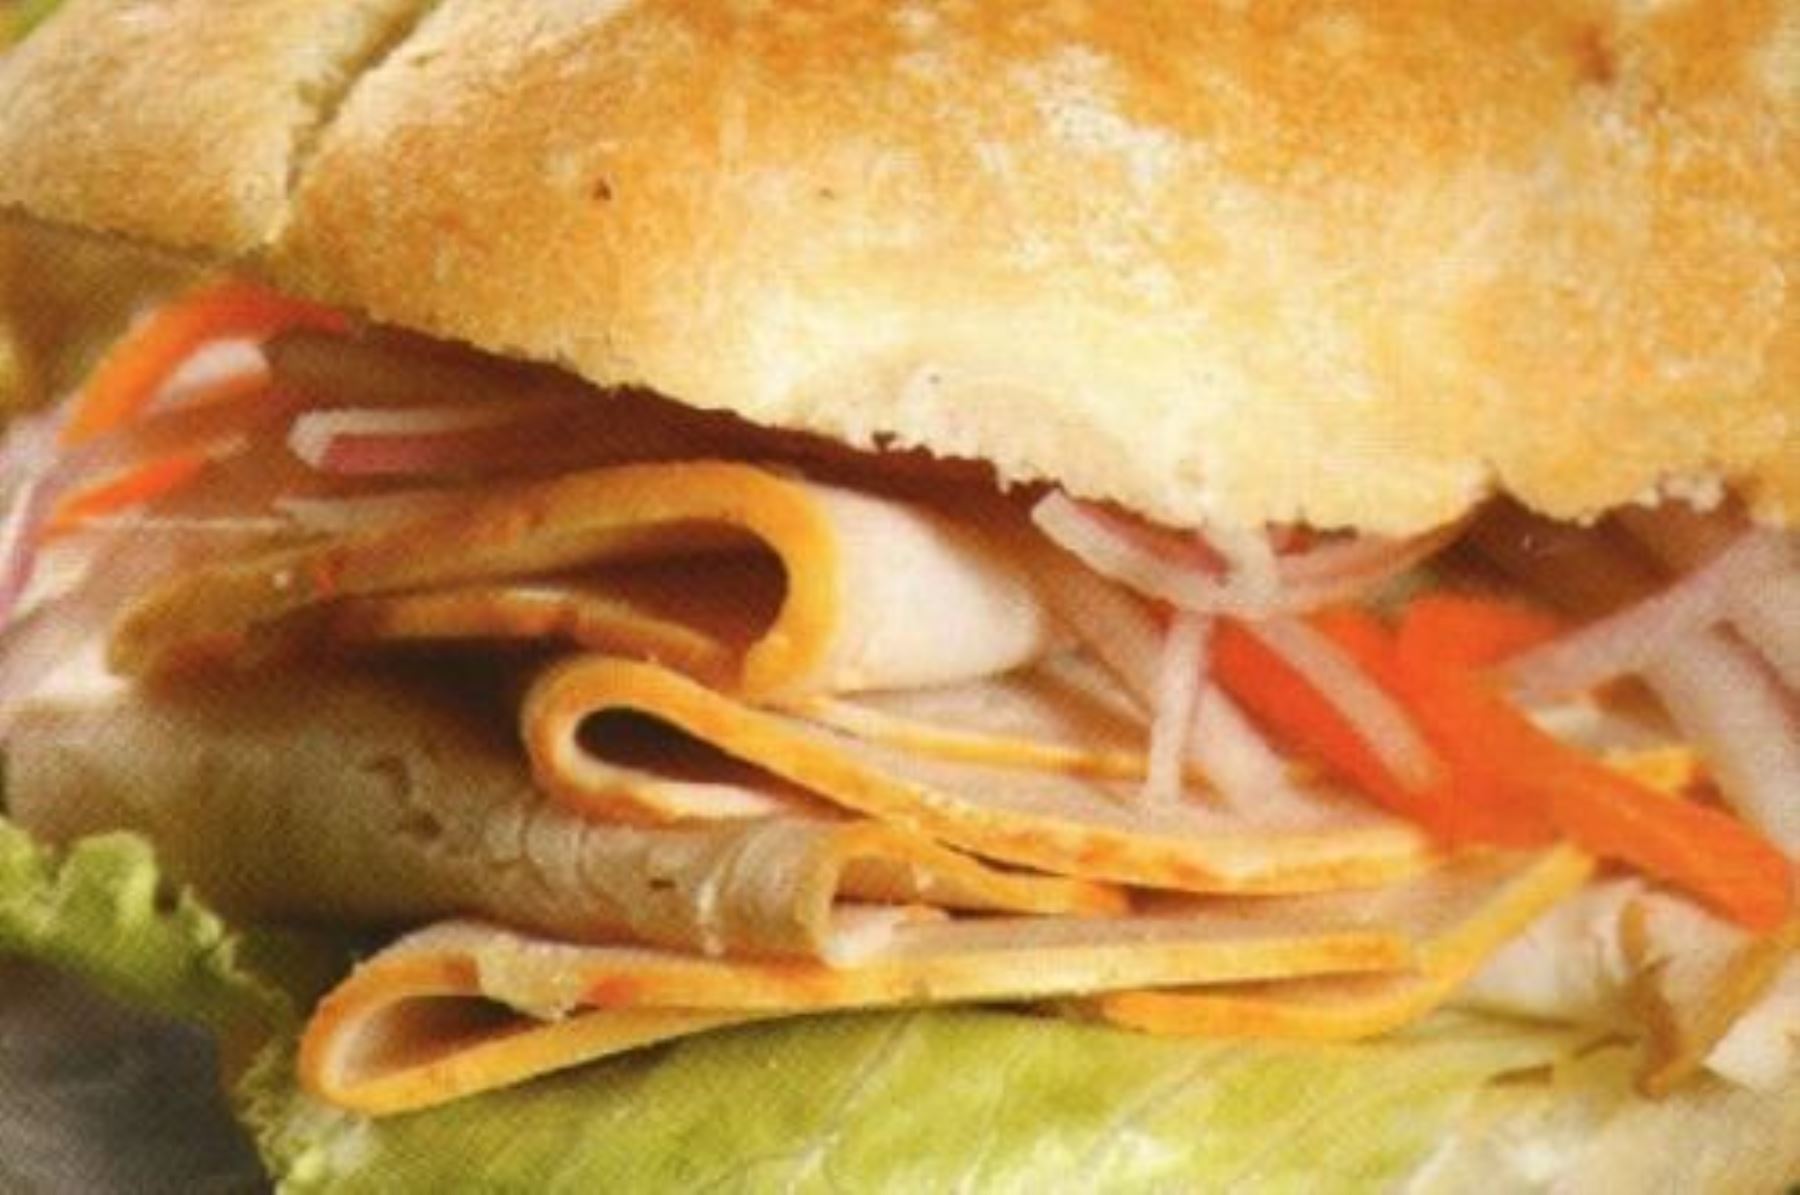 Taste Atlas nombró al sándwich bandera como el segundo más sabroso a nivel mundial, por segundo año consecutivo. Foto: ANDINA/archivo